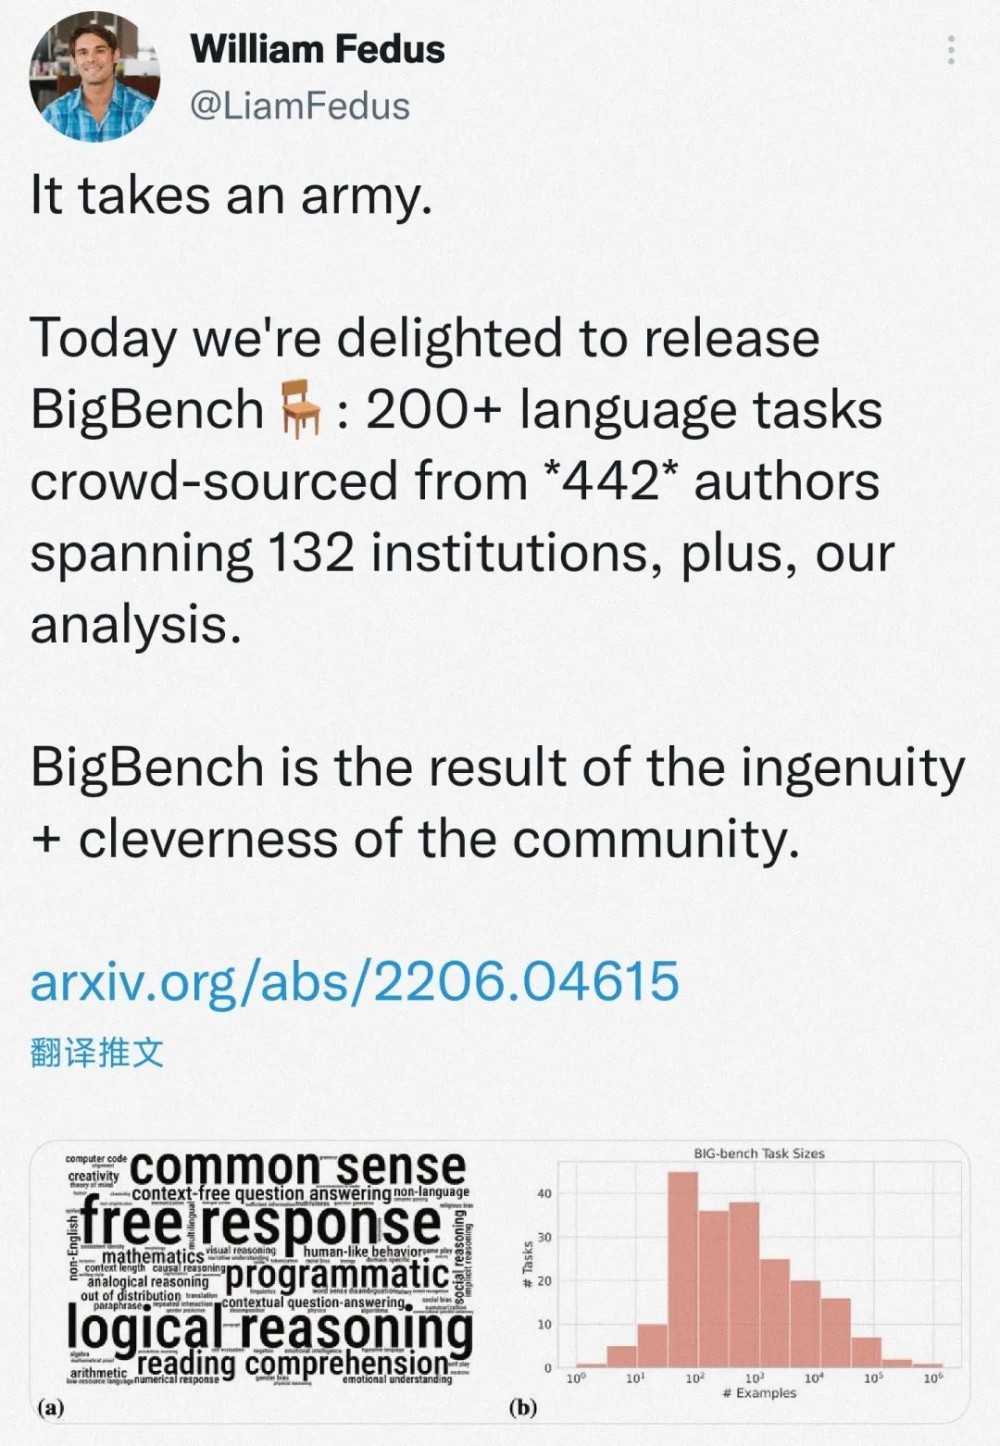 又一篇超百名作者的 AI 论文问世！442位作者耗时两年发布大模型新基准 BIG-bench……